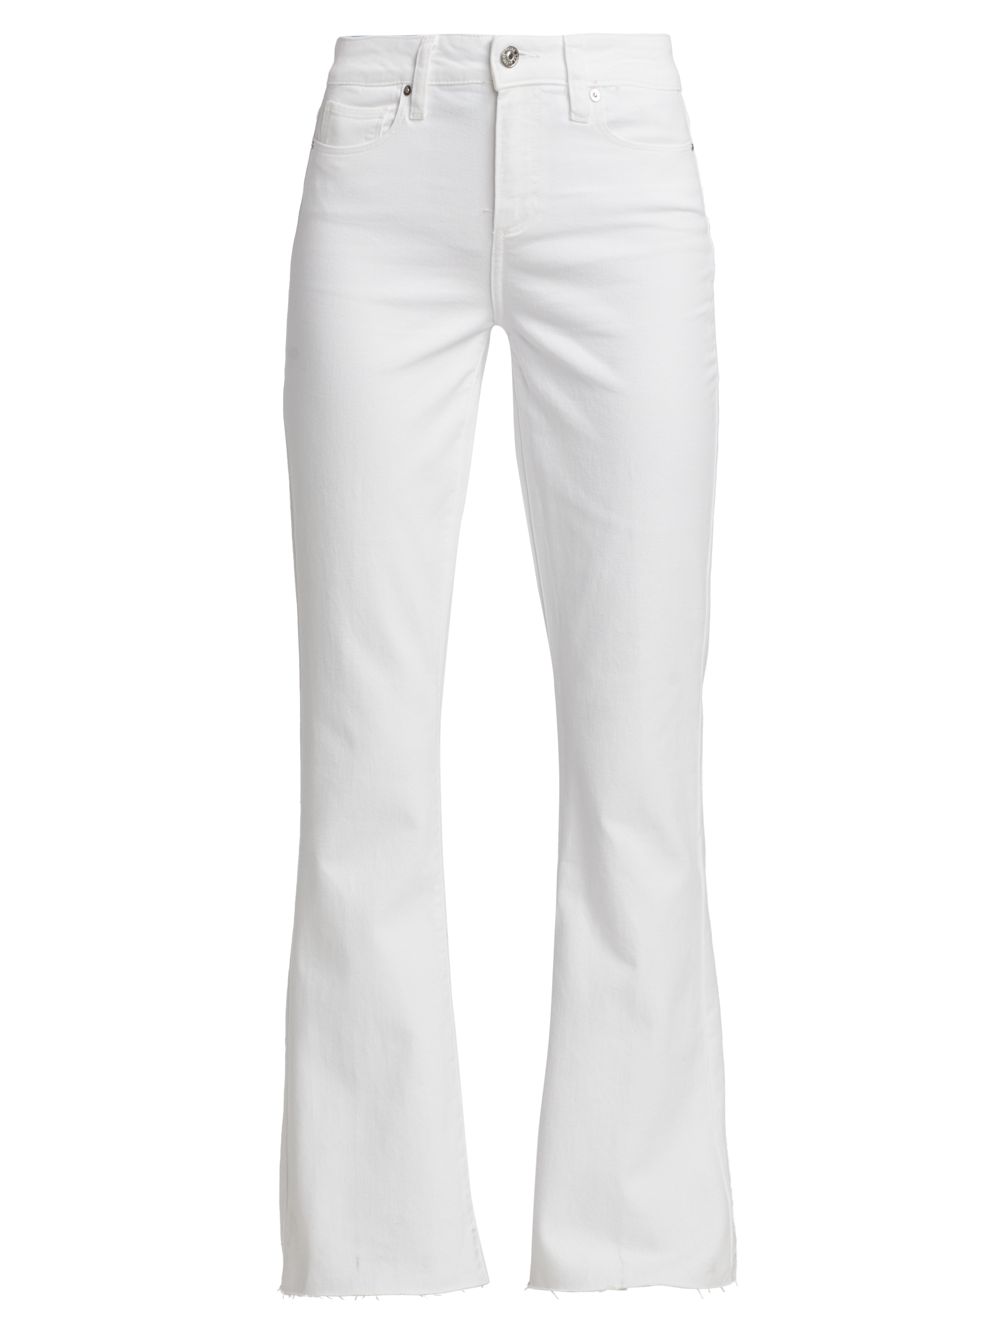 Расклешенные джинсы Laurel Canyon Paige, белый